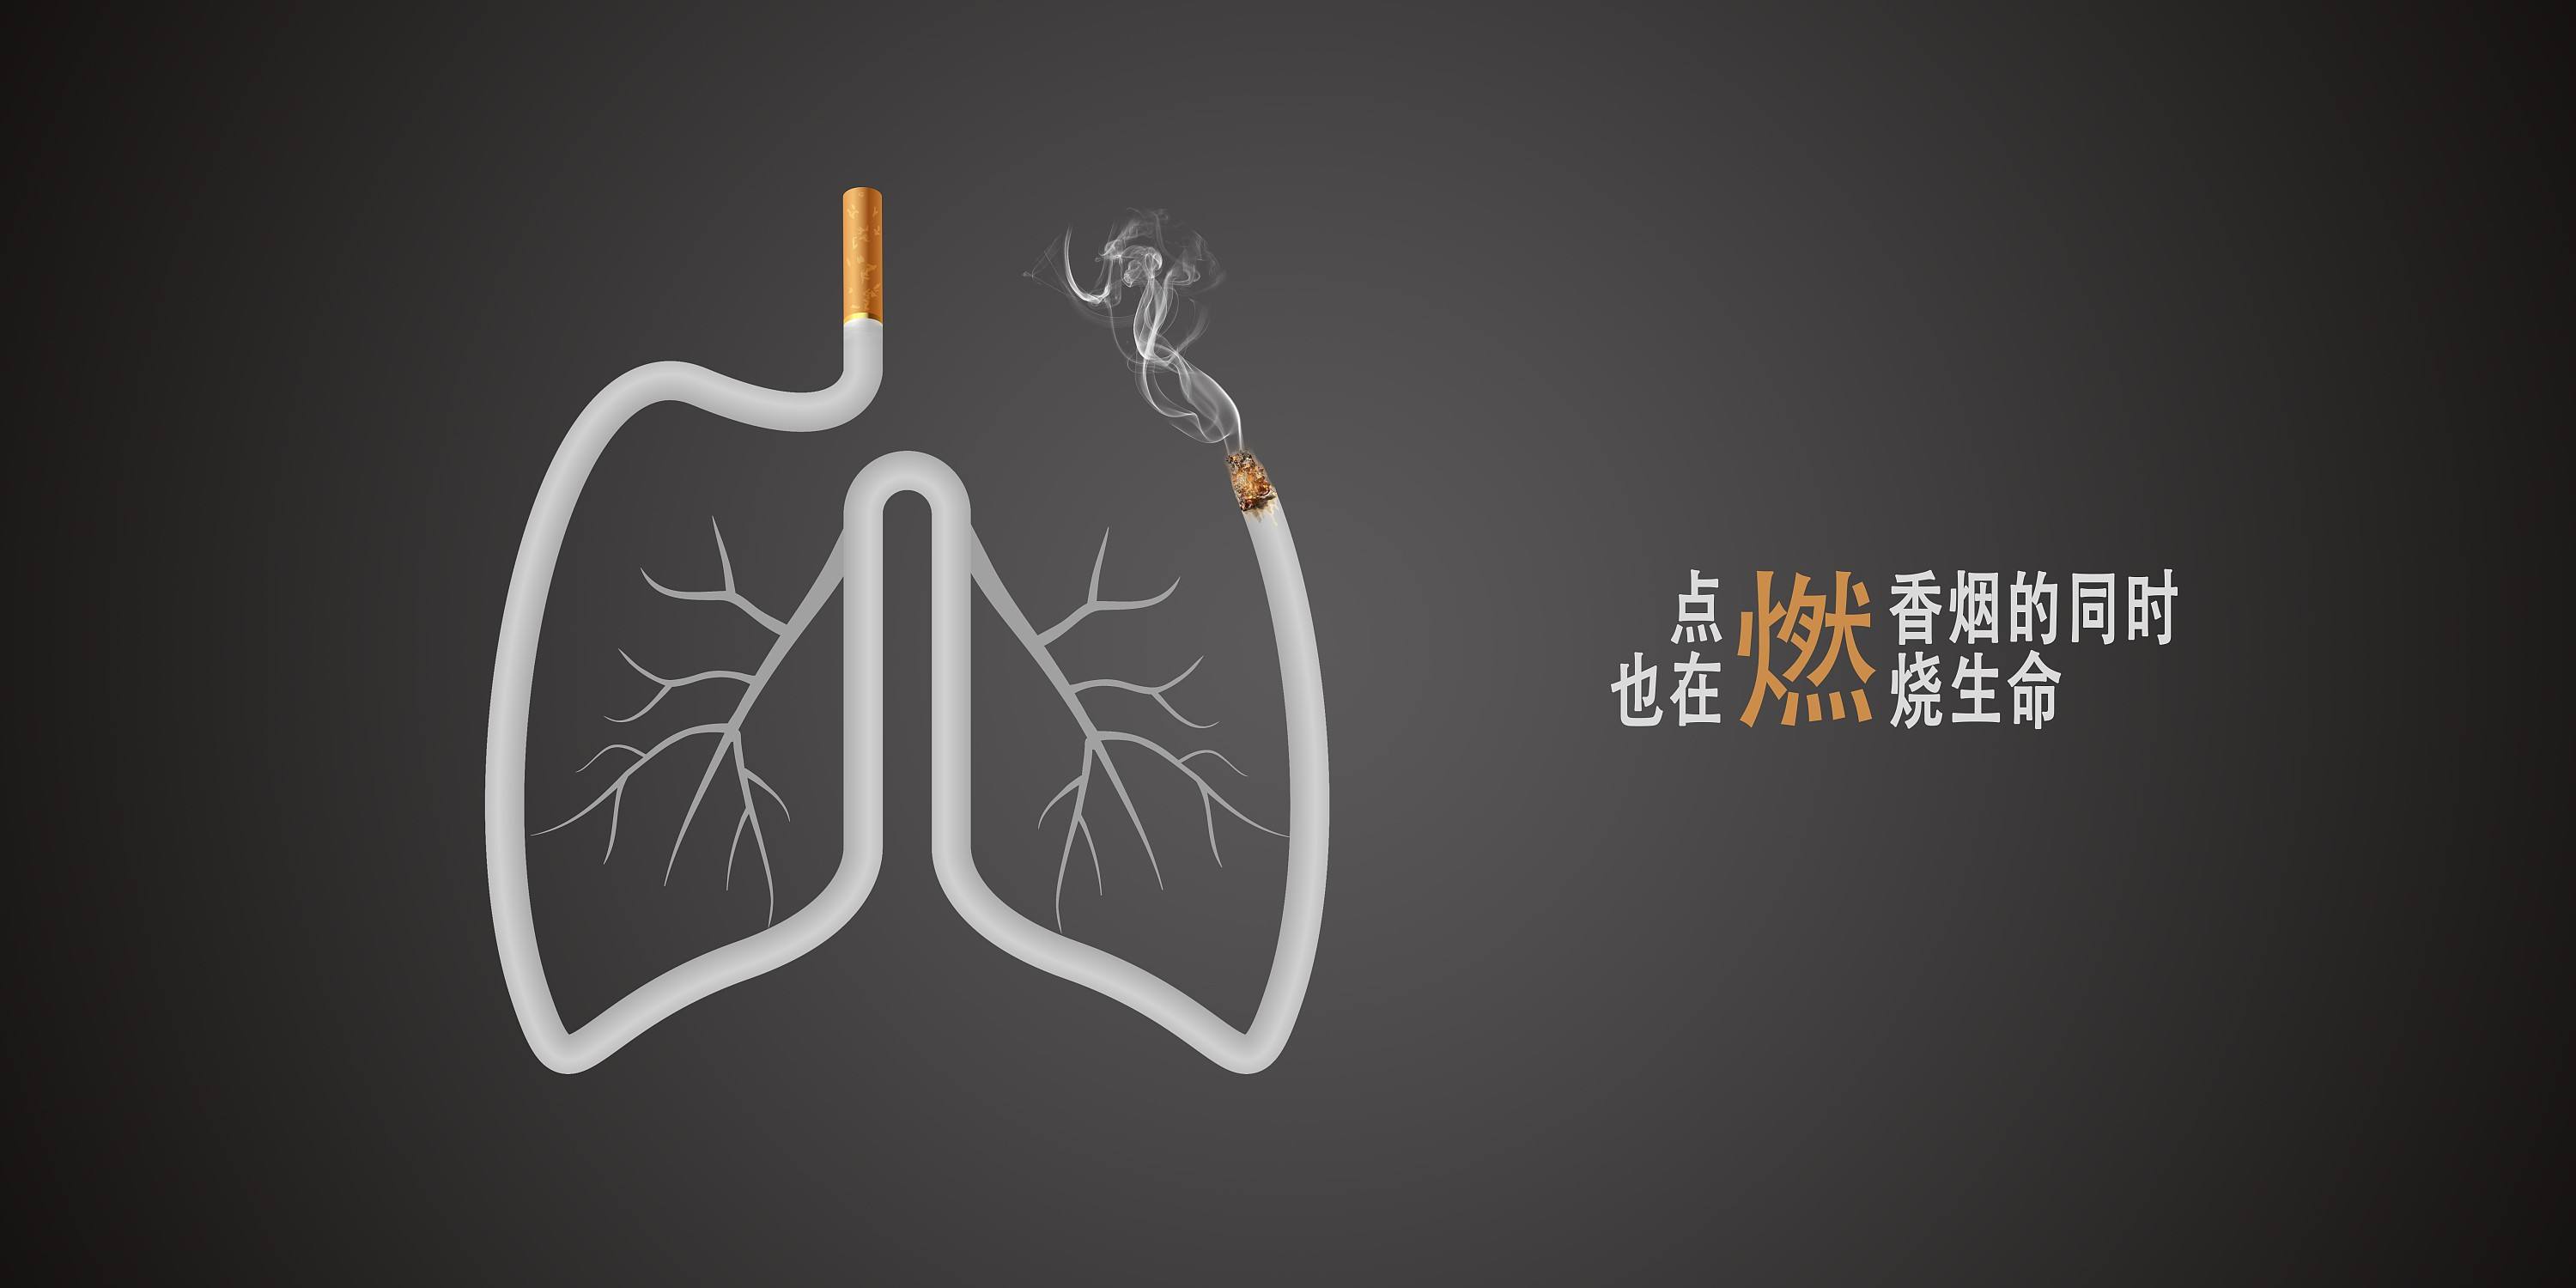 肺部杀手：以吸烟有害健康的标语对抗万宝路男人，反烟者的控诉史